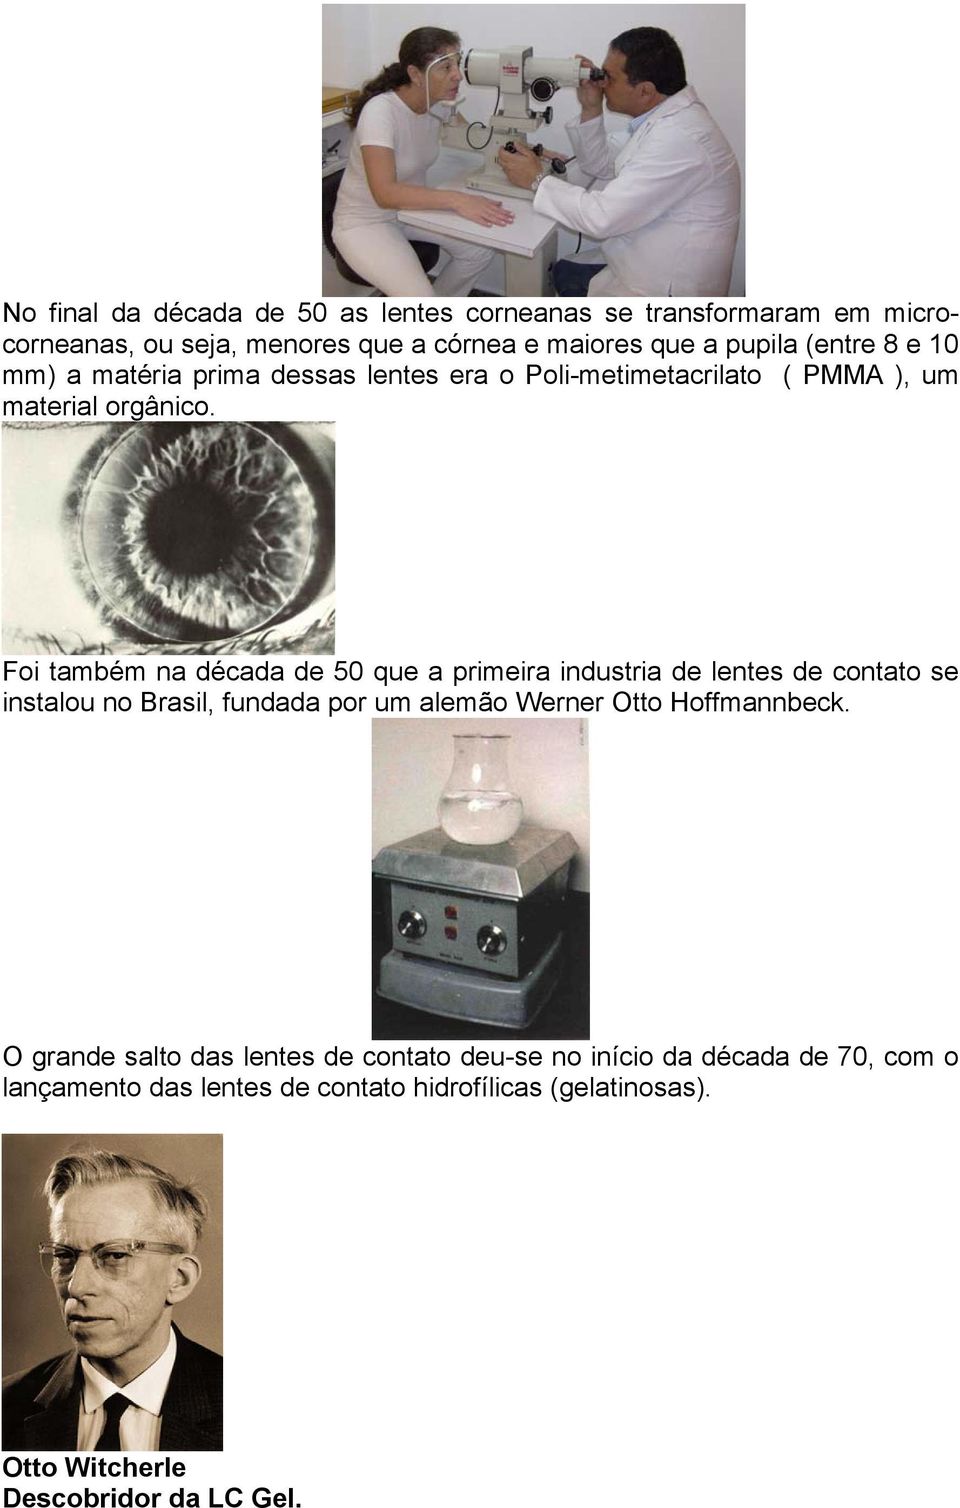 Foi também na década de 50 que a primeira industria de lentes de contato se instalou no Brasil, fundada por um alemão Werner Otto